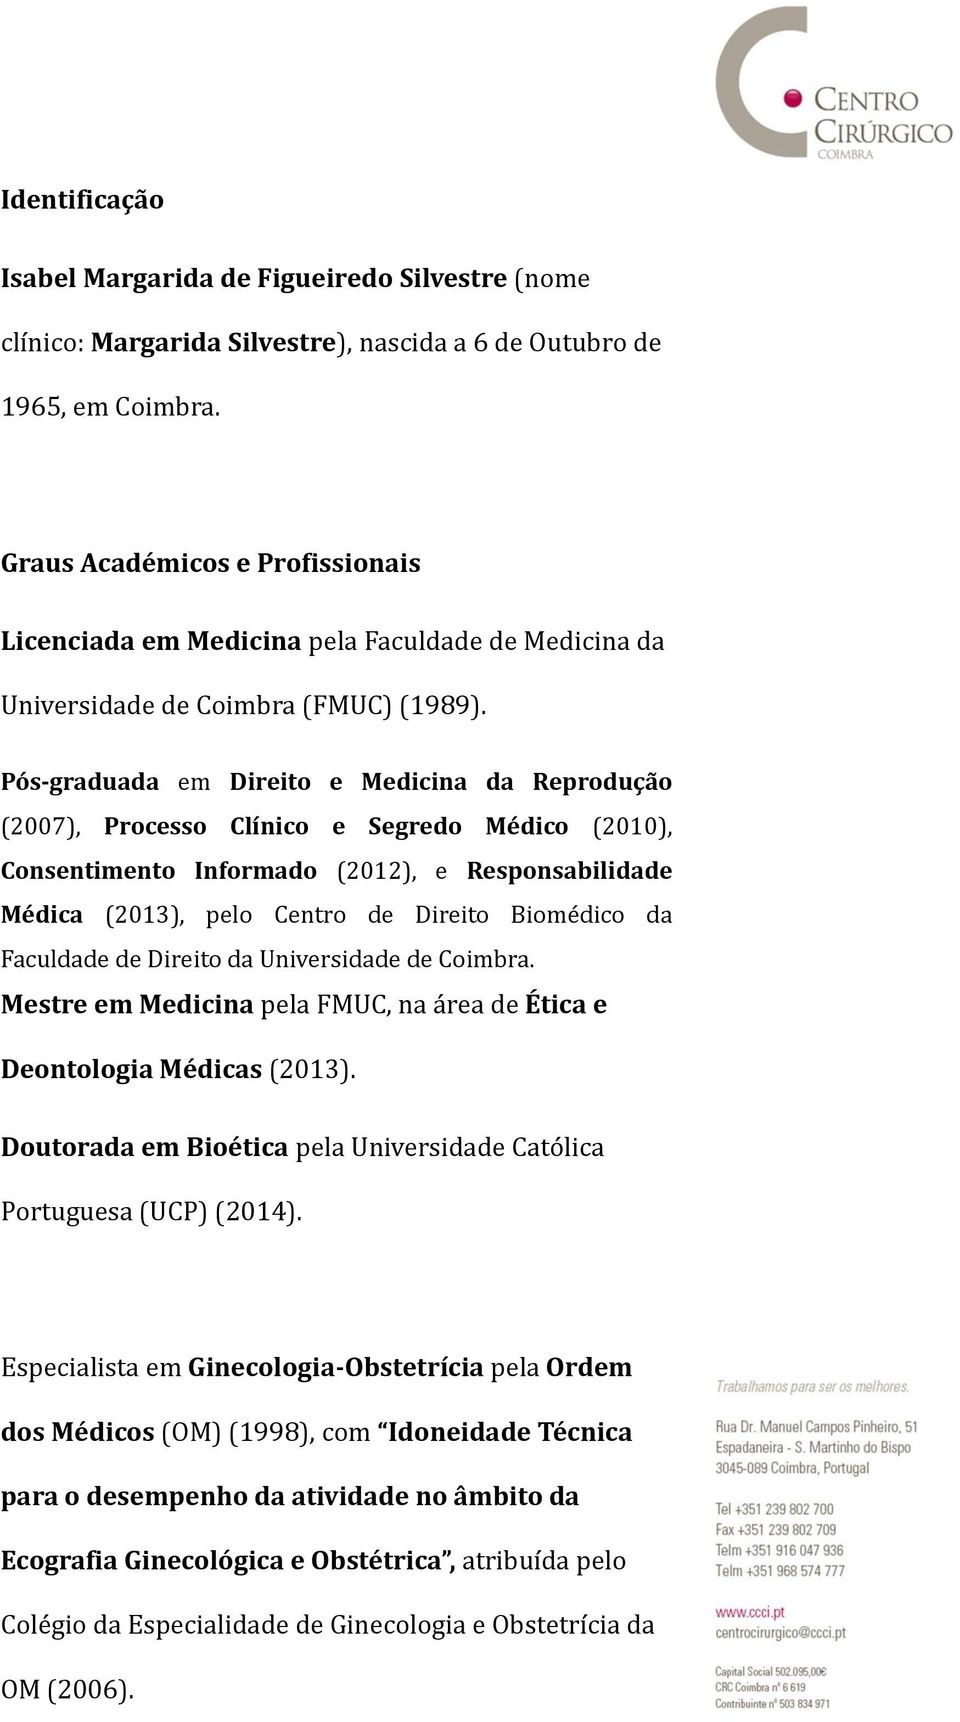 Pós-graduada em Direito e Medicina da Reprodução (2007), Processo Clínico e Segredo Médico (2010), Consentimento Informado (2012), e Responsabilidade Médica (2013), pelo Centro de Direito Biomédico